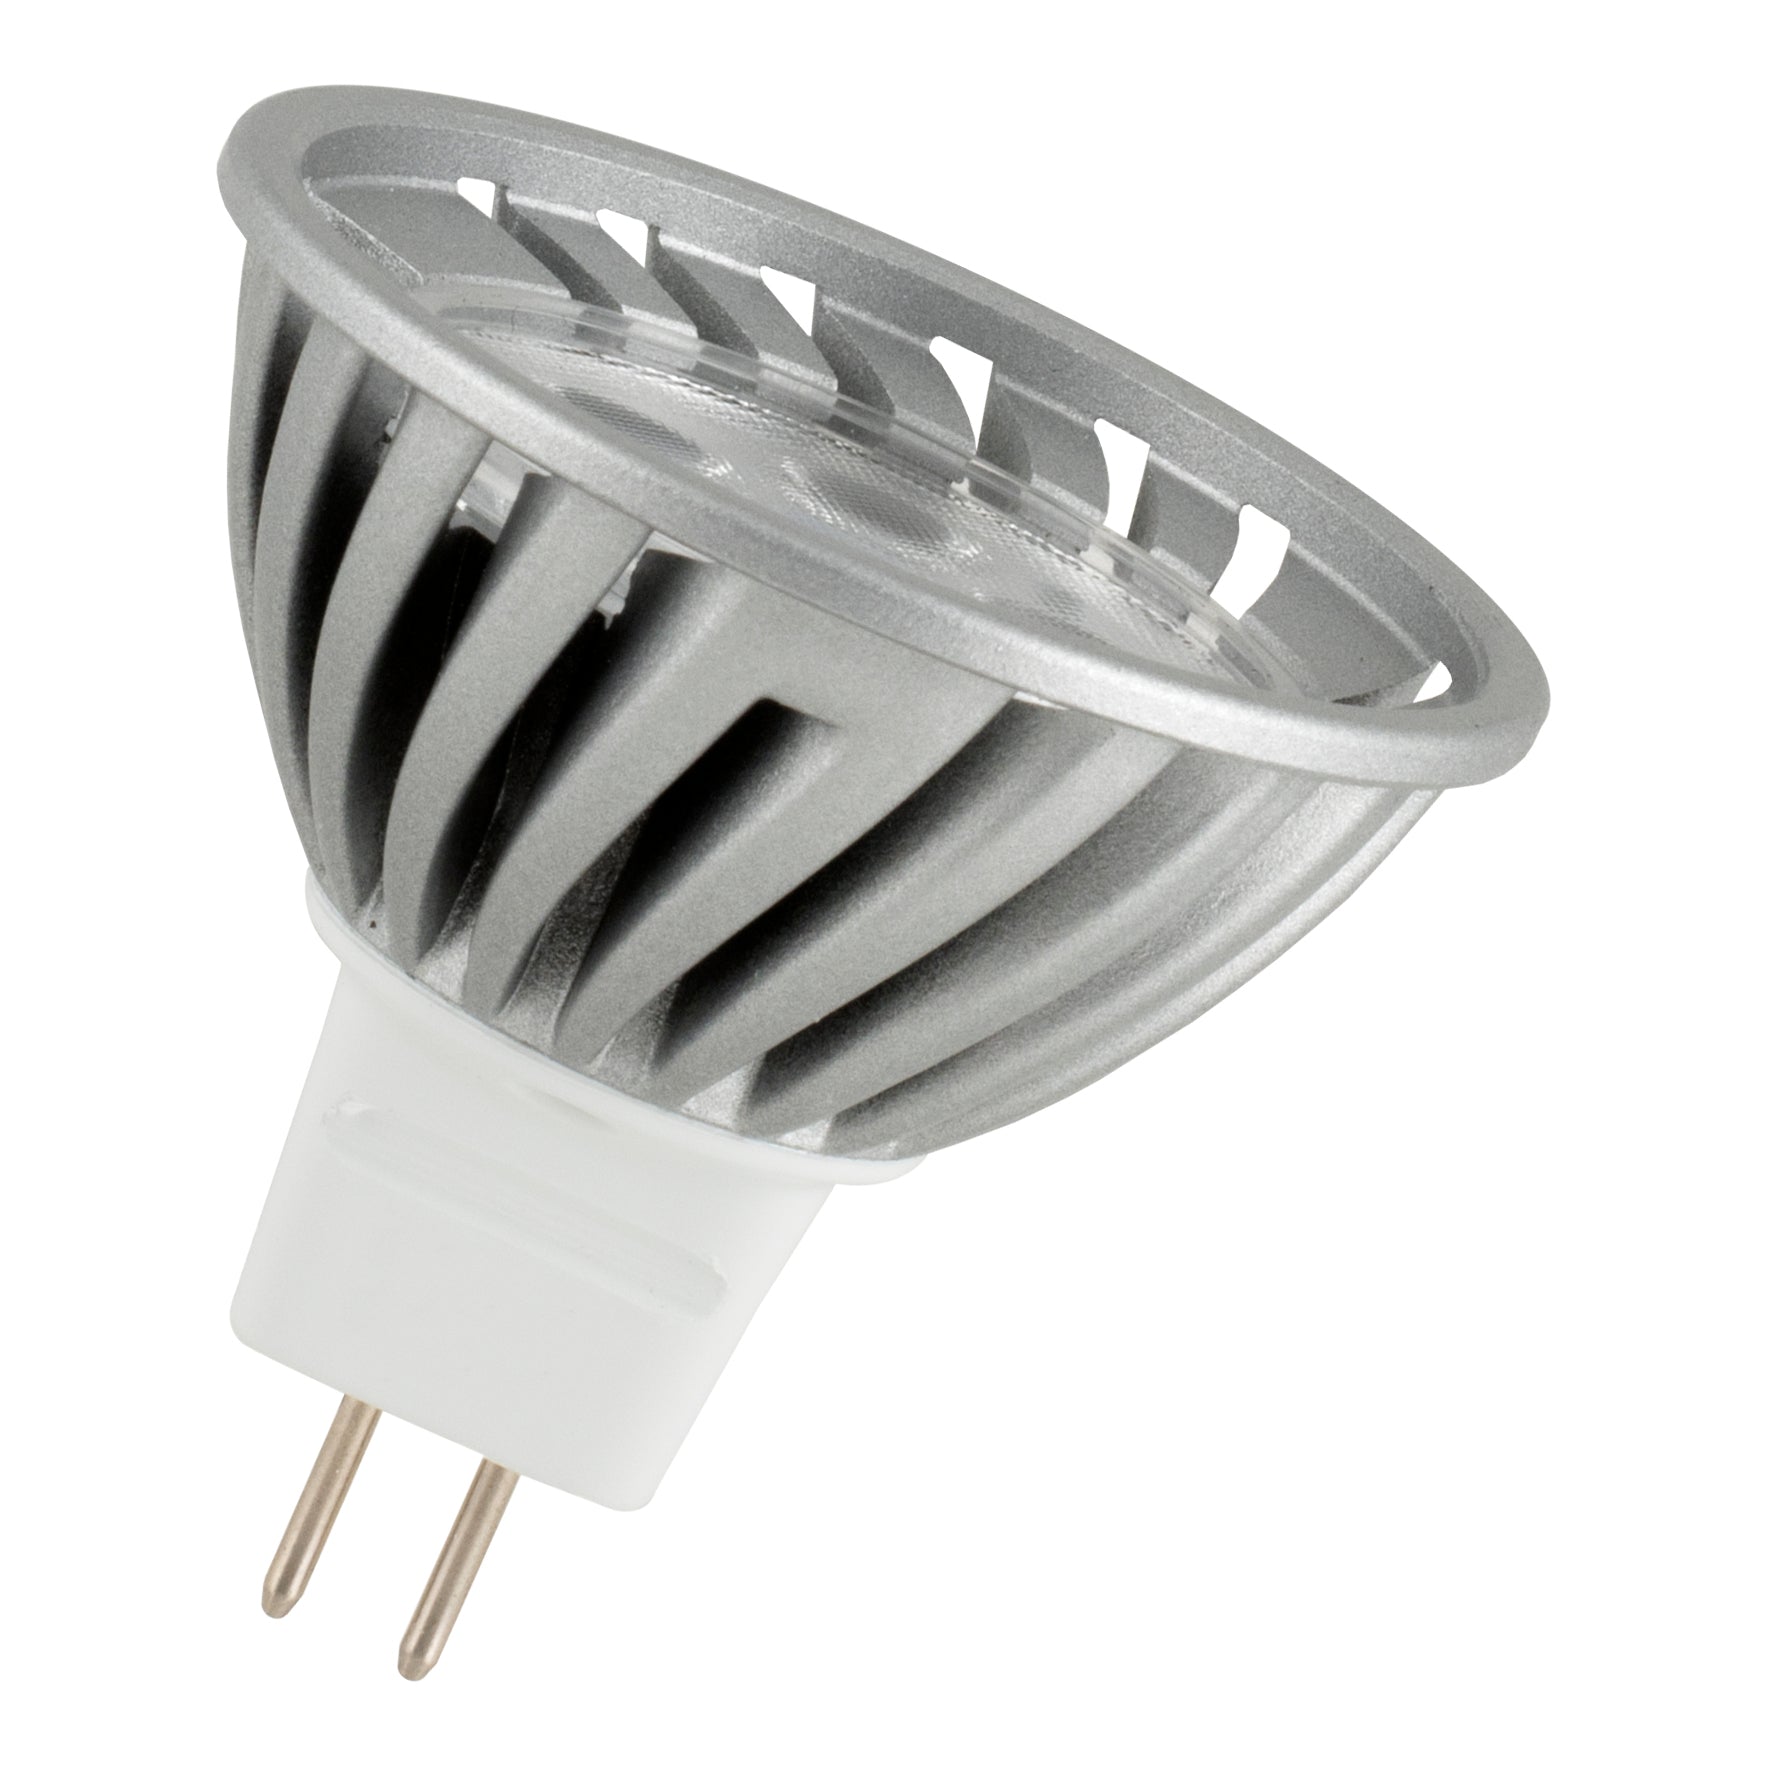 Akkumulering Fremhævet Hælde Bailey - 80100041303 - LED Spot MR16 GU5.3 24V-28V 5W (50W) 580lm 830 – The  Lamp Company